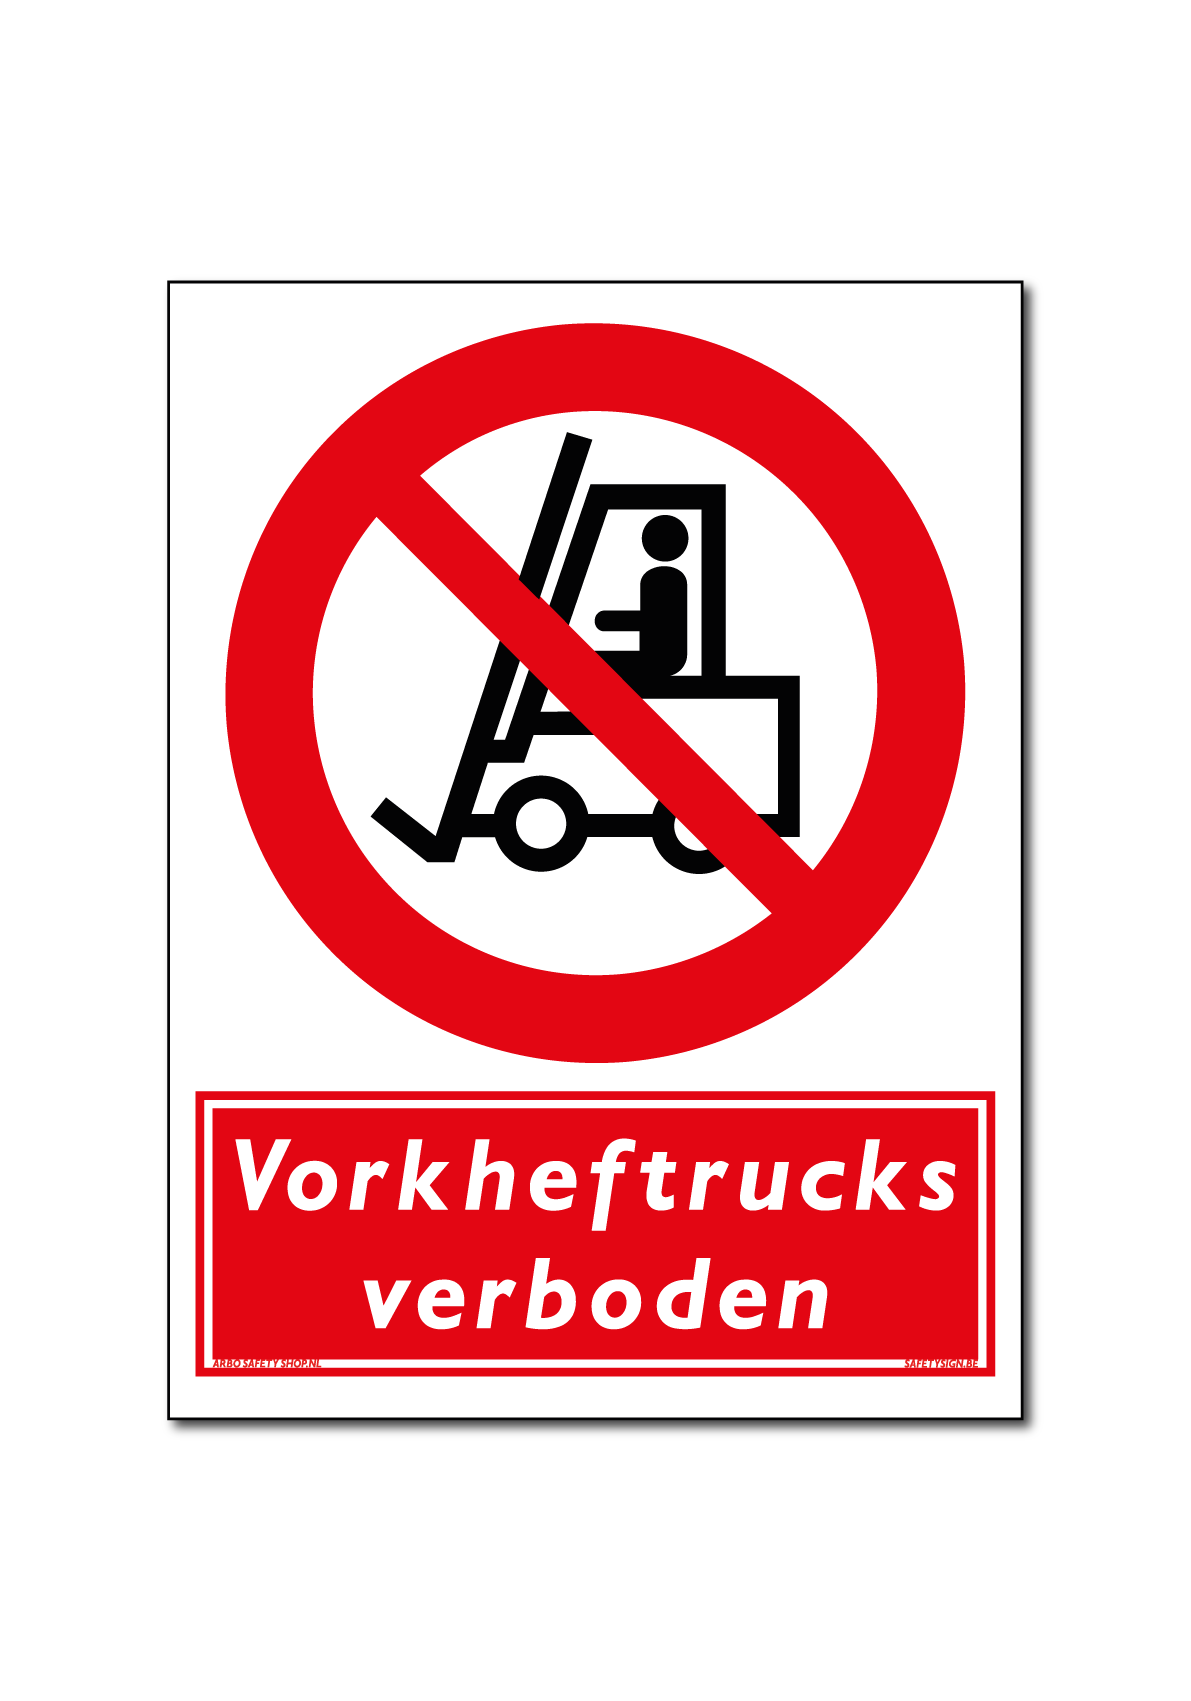 Vorkheftrucks verboden bord / sticker